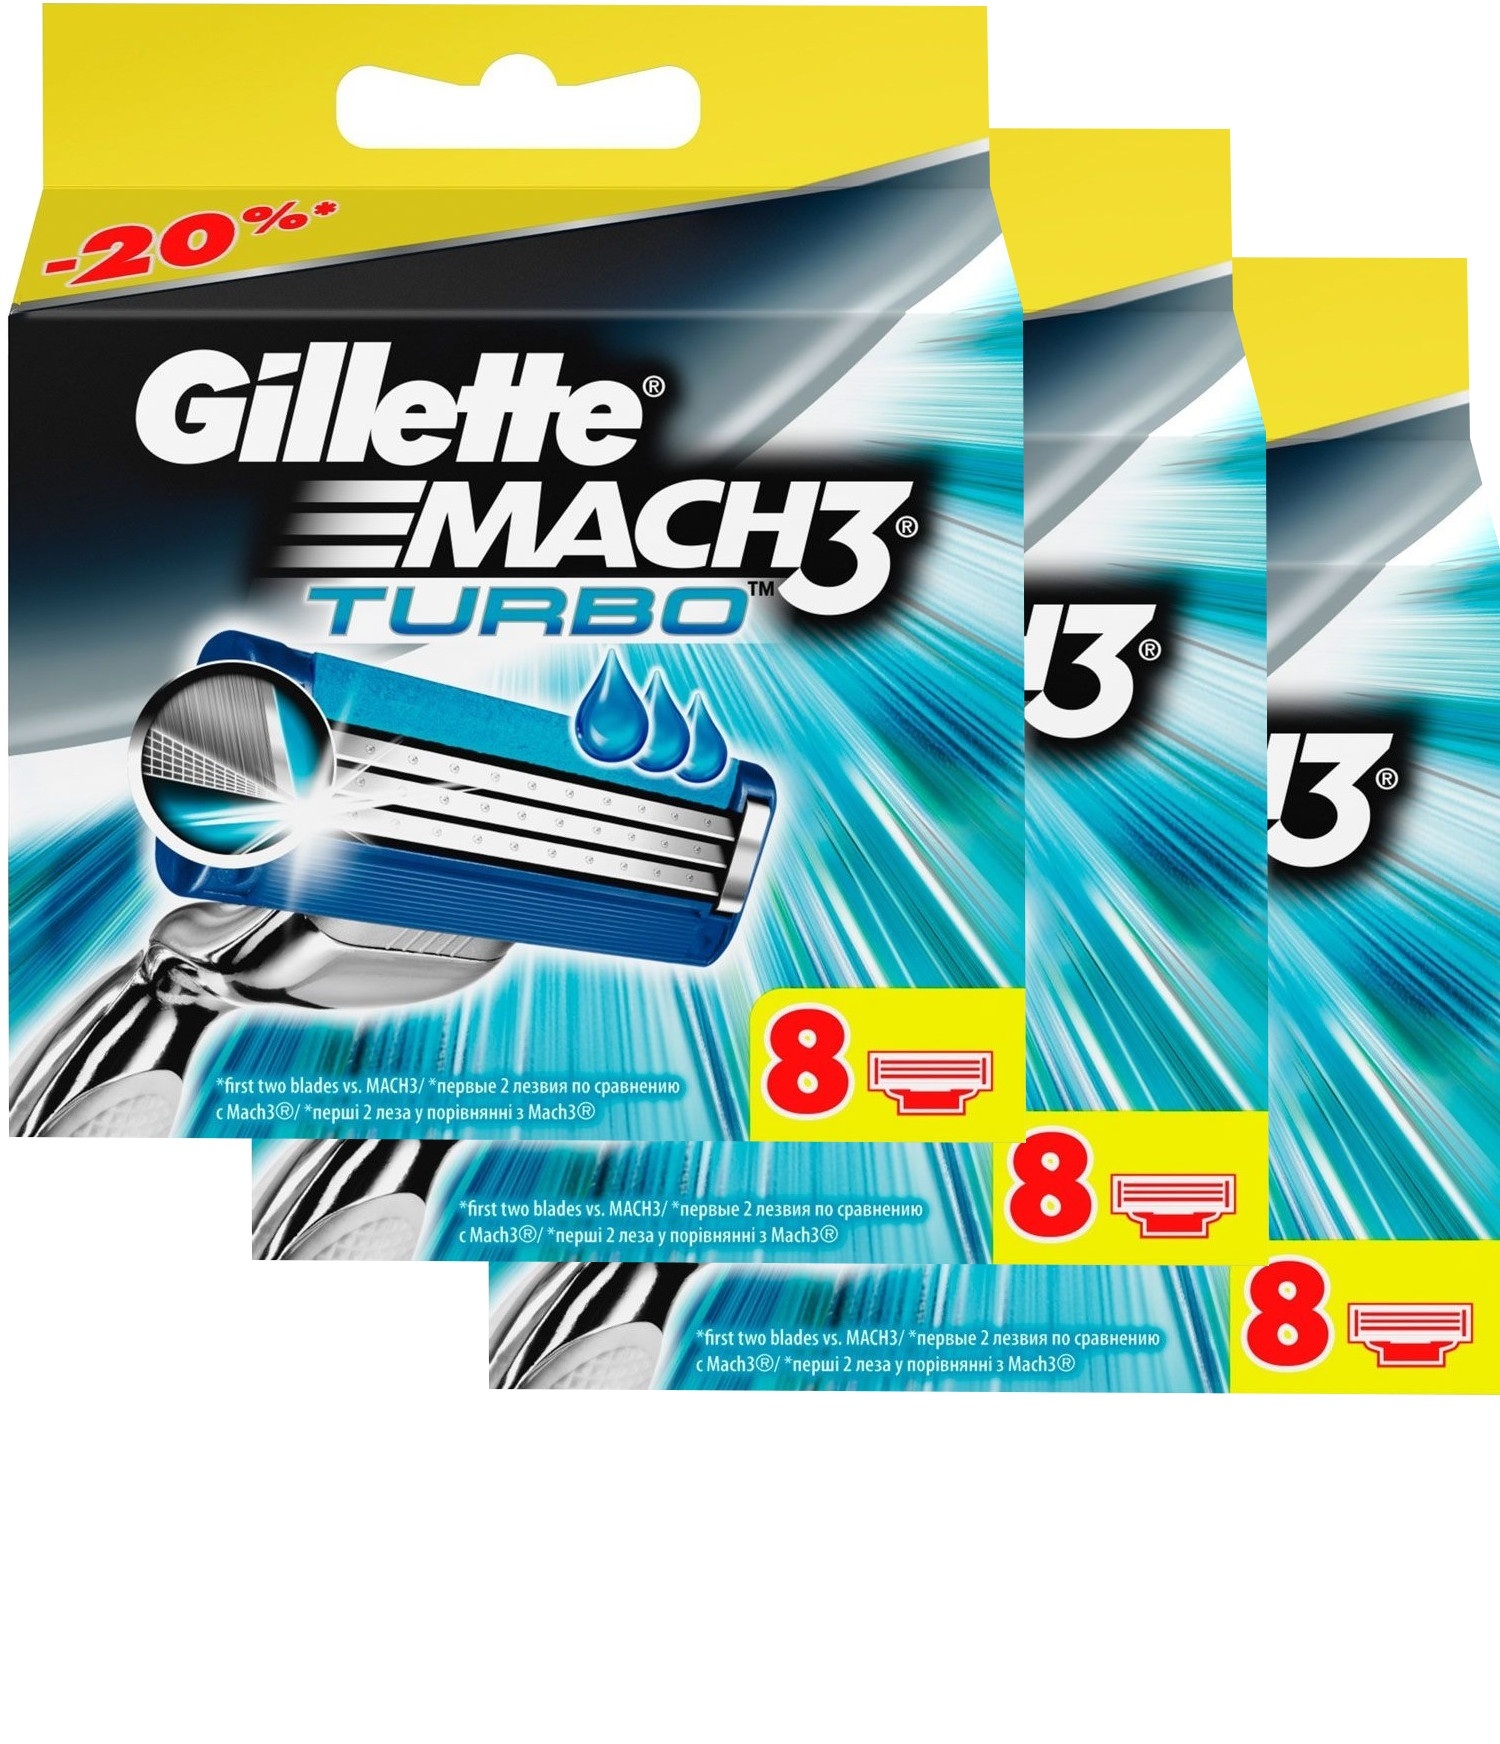 Сменные кассеты для бритья Gillette MACH3 Turbo (24 шт). Цена с учетом скидки 6%.